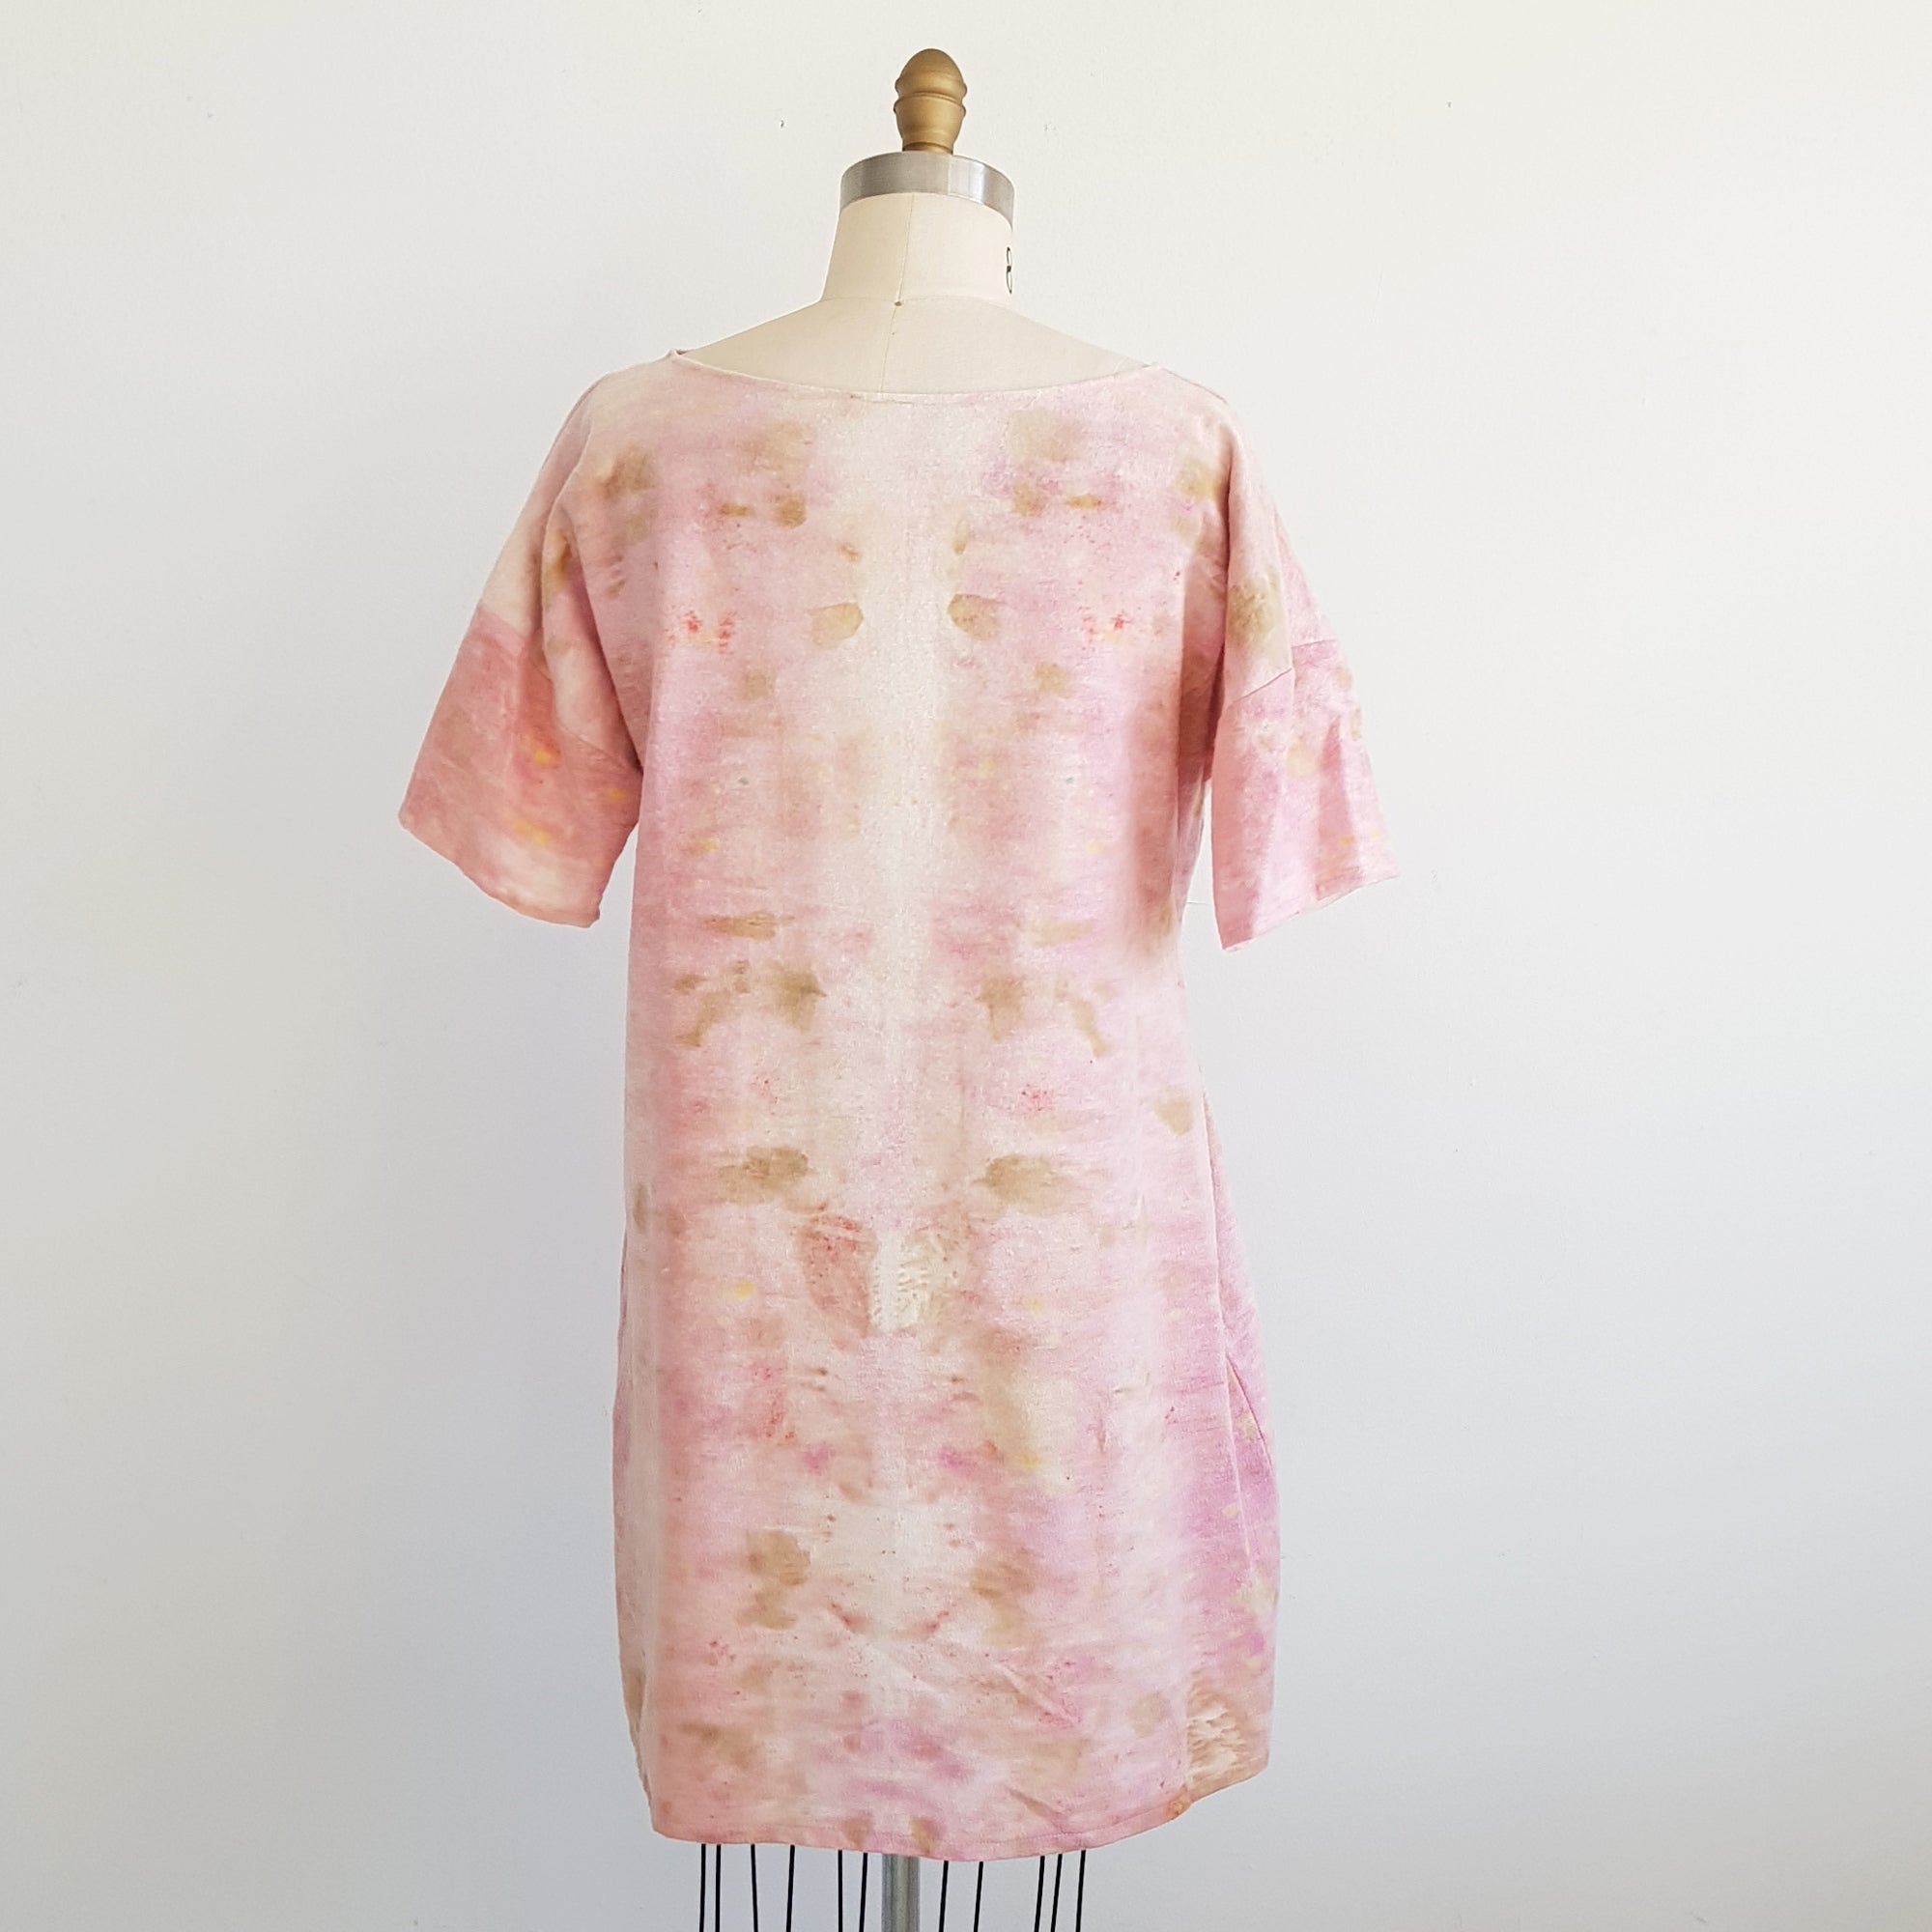 Eco Print fleece xsilk cotton – prints dress leaf botanical dye